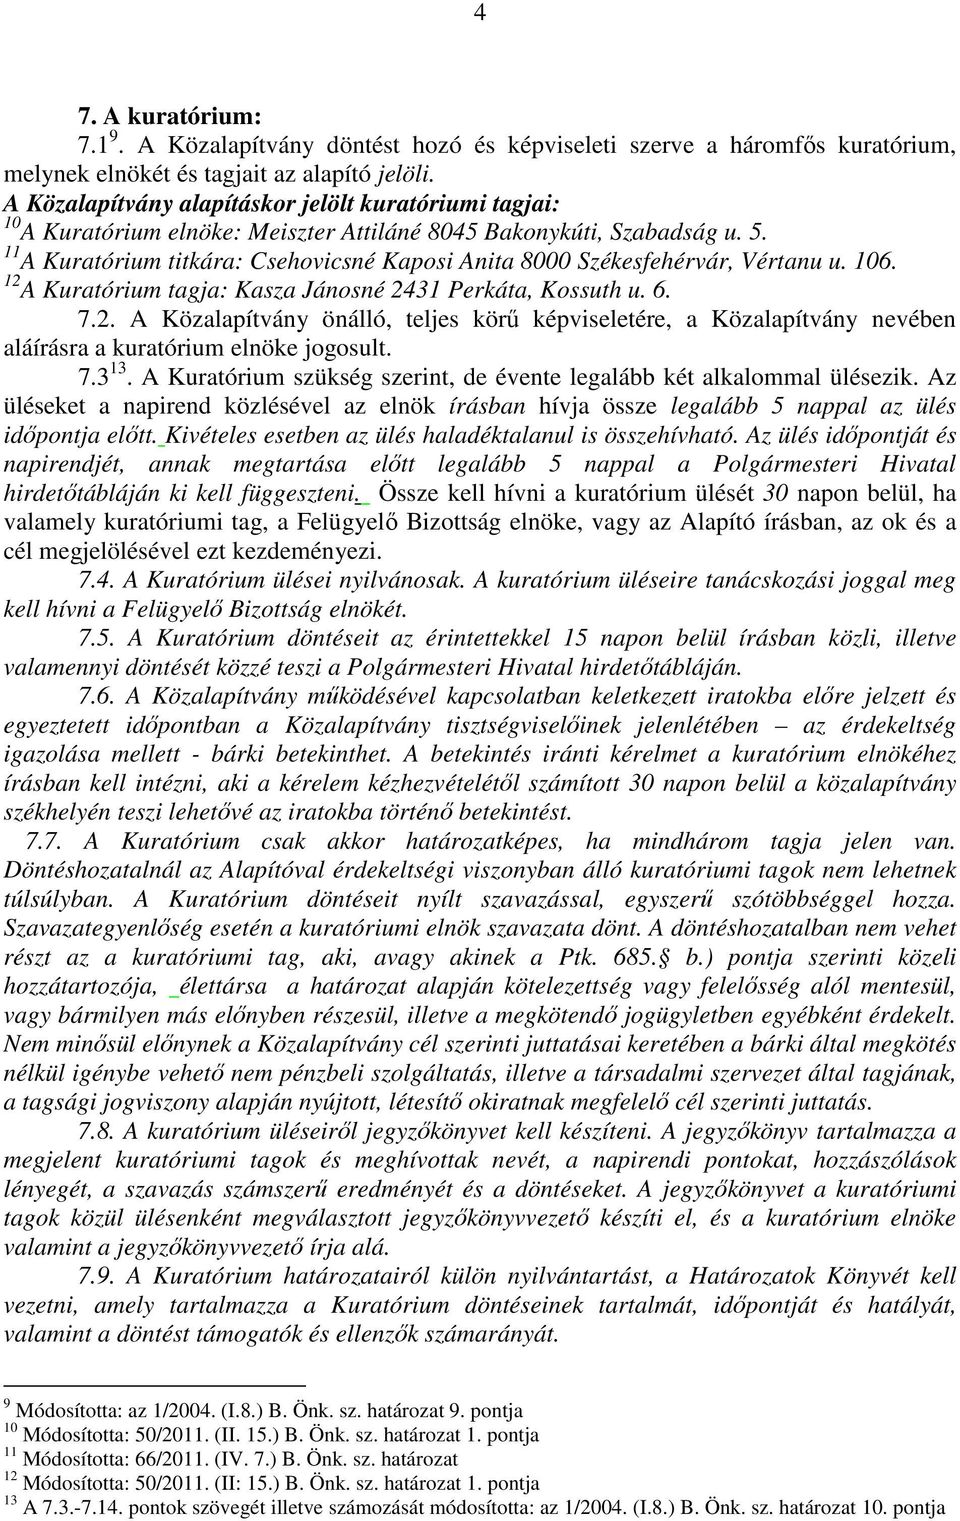 11 A Kuratórium titkára: Csehovicsné Kaposi Anita 8000 Székesfehérvár, Vértanu u. 106. 12 